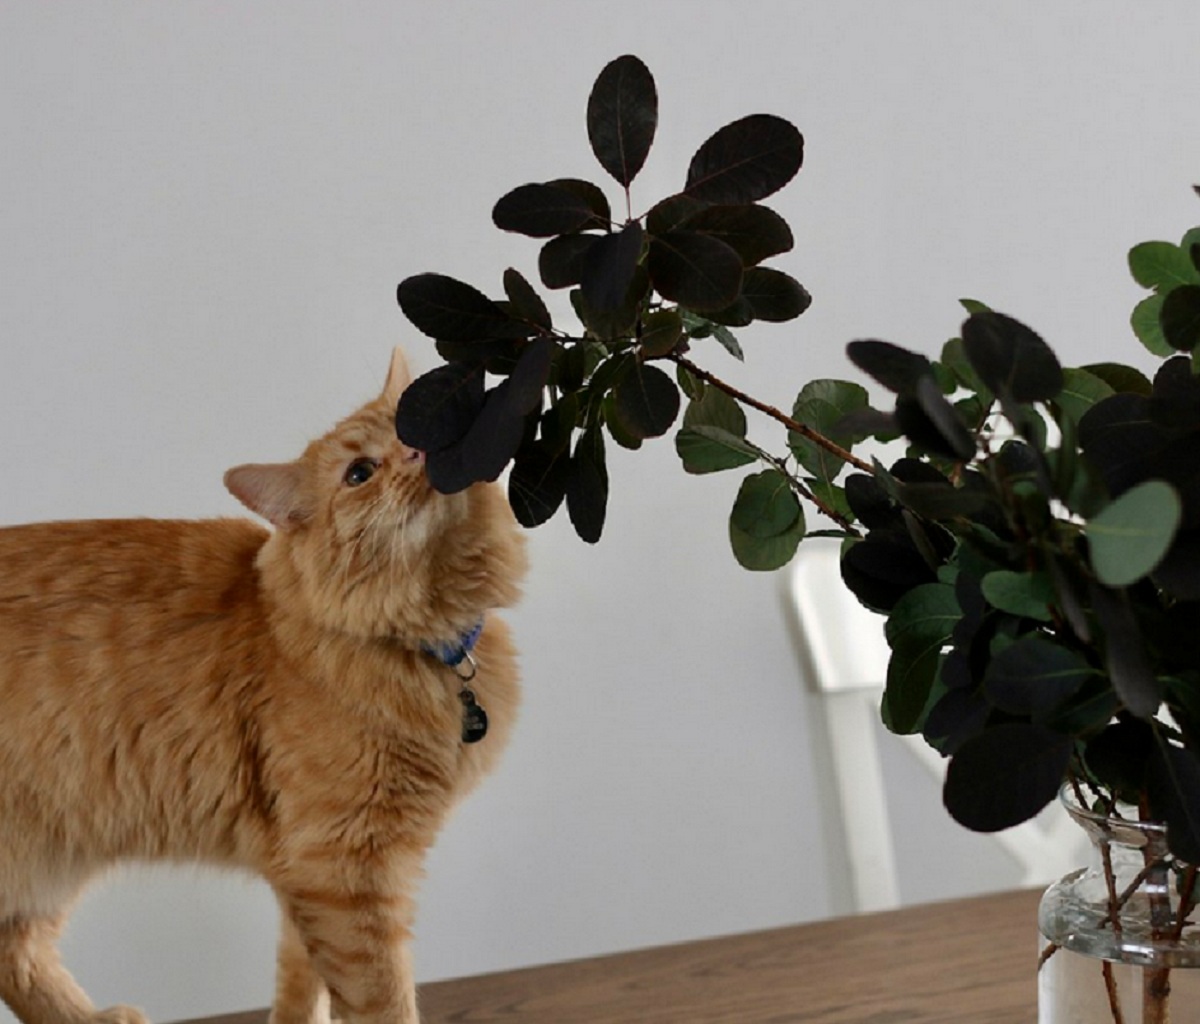 Kenali 6 Tanaman Rumah Yang Tidak Disukai Kucing, Para Pemilik Kucing Wajib Tau!